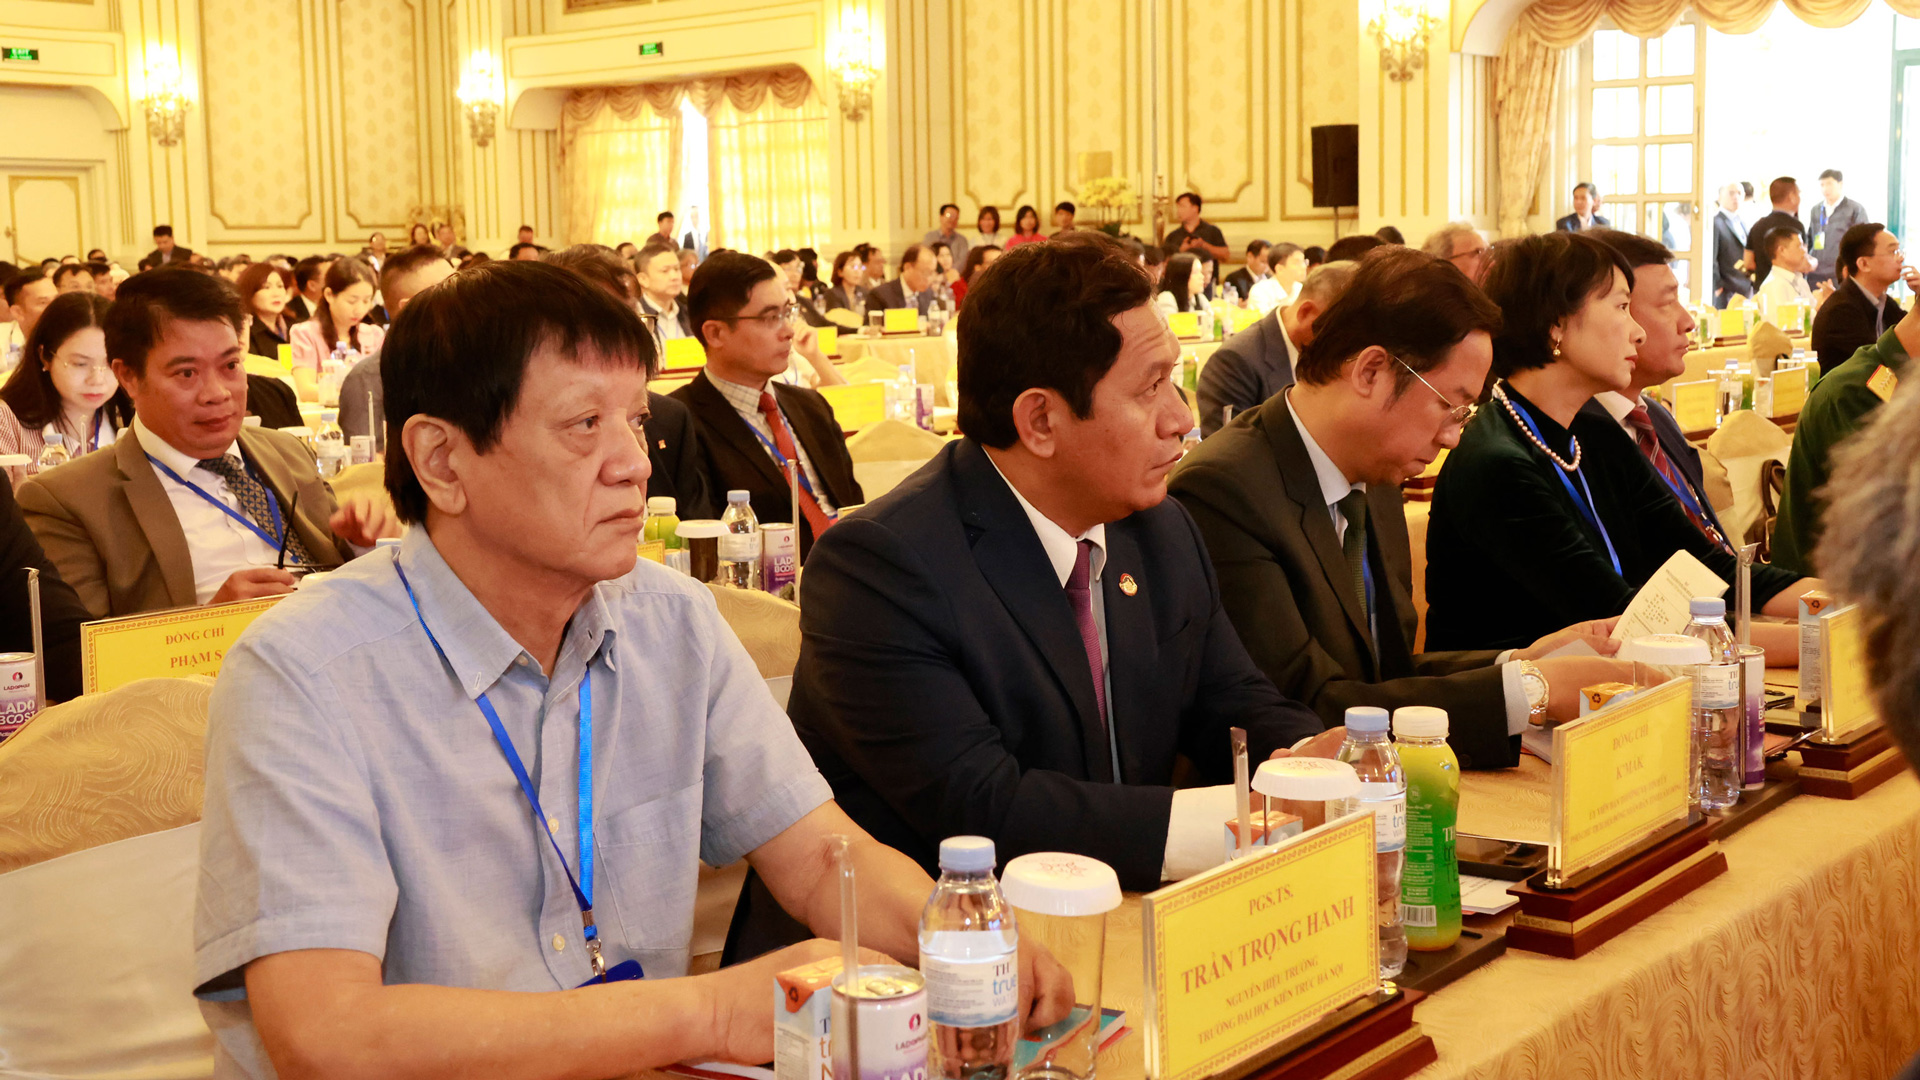 Lãnh đạo Chính phủ, các bộ, ngành Trung ương, lãnh đạo tỉnh Lâm Đồng và các tỉnh Tây Nguyên dự hội nghị